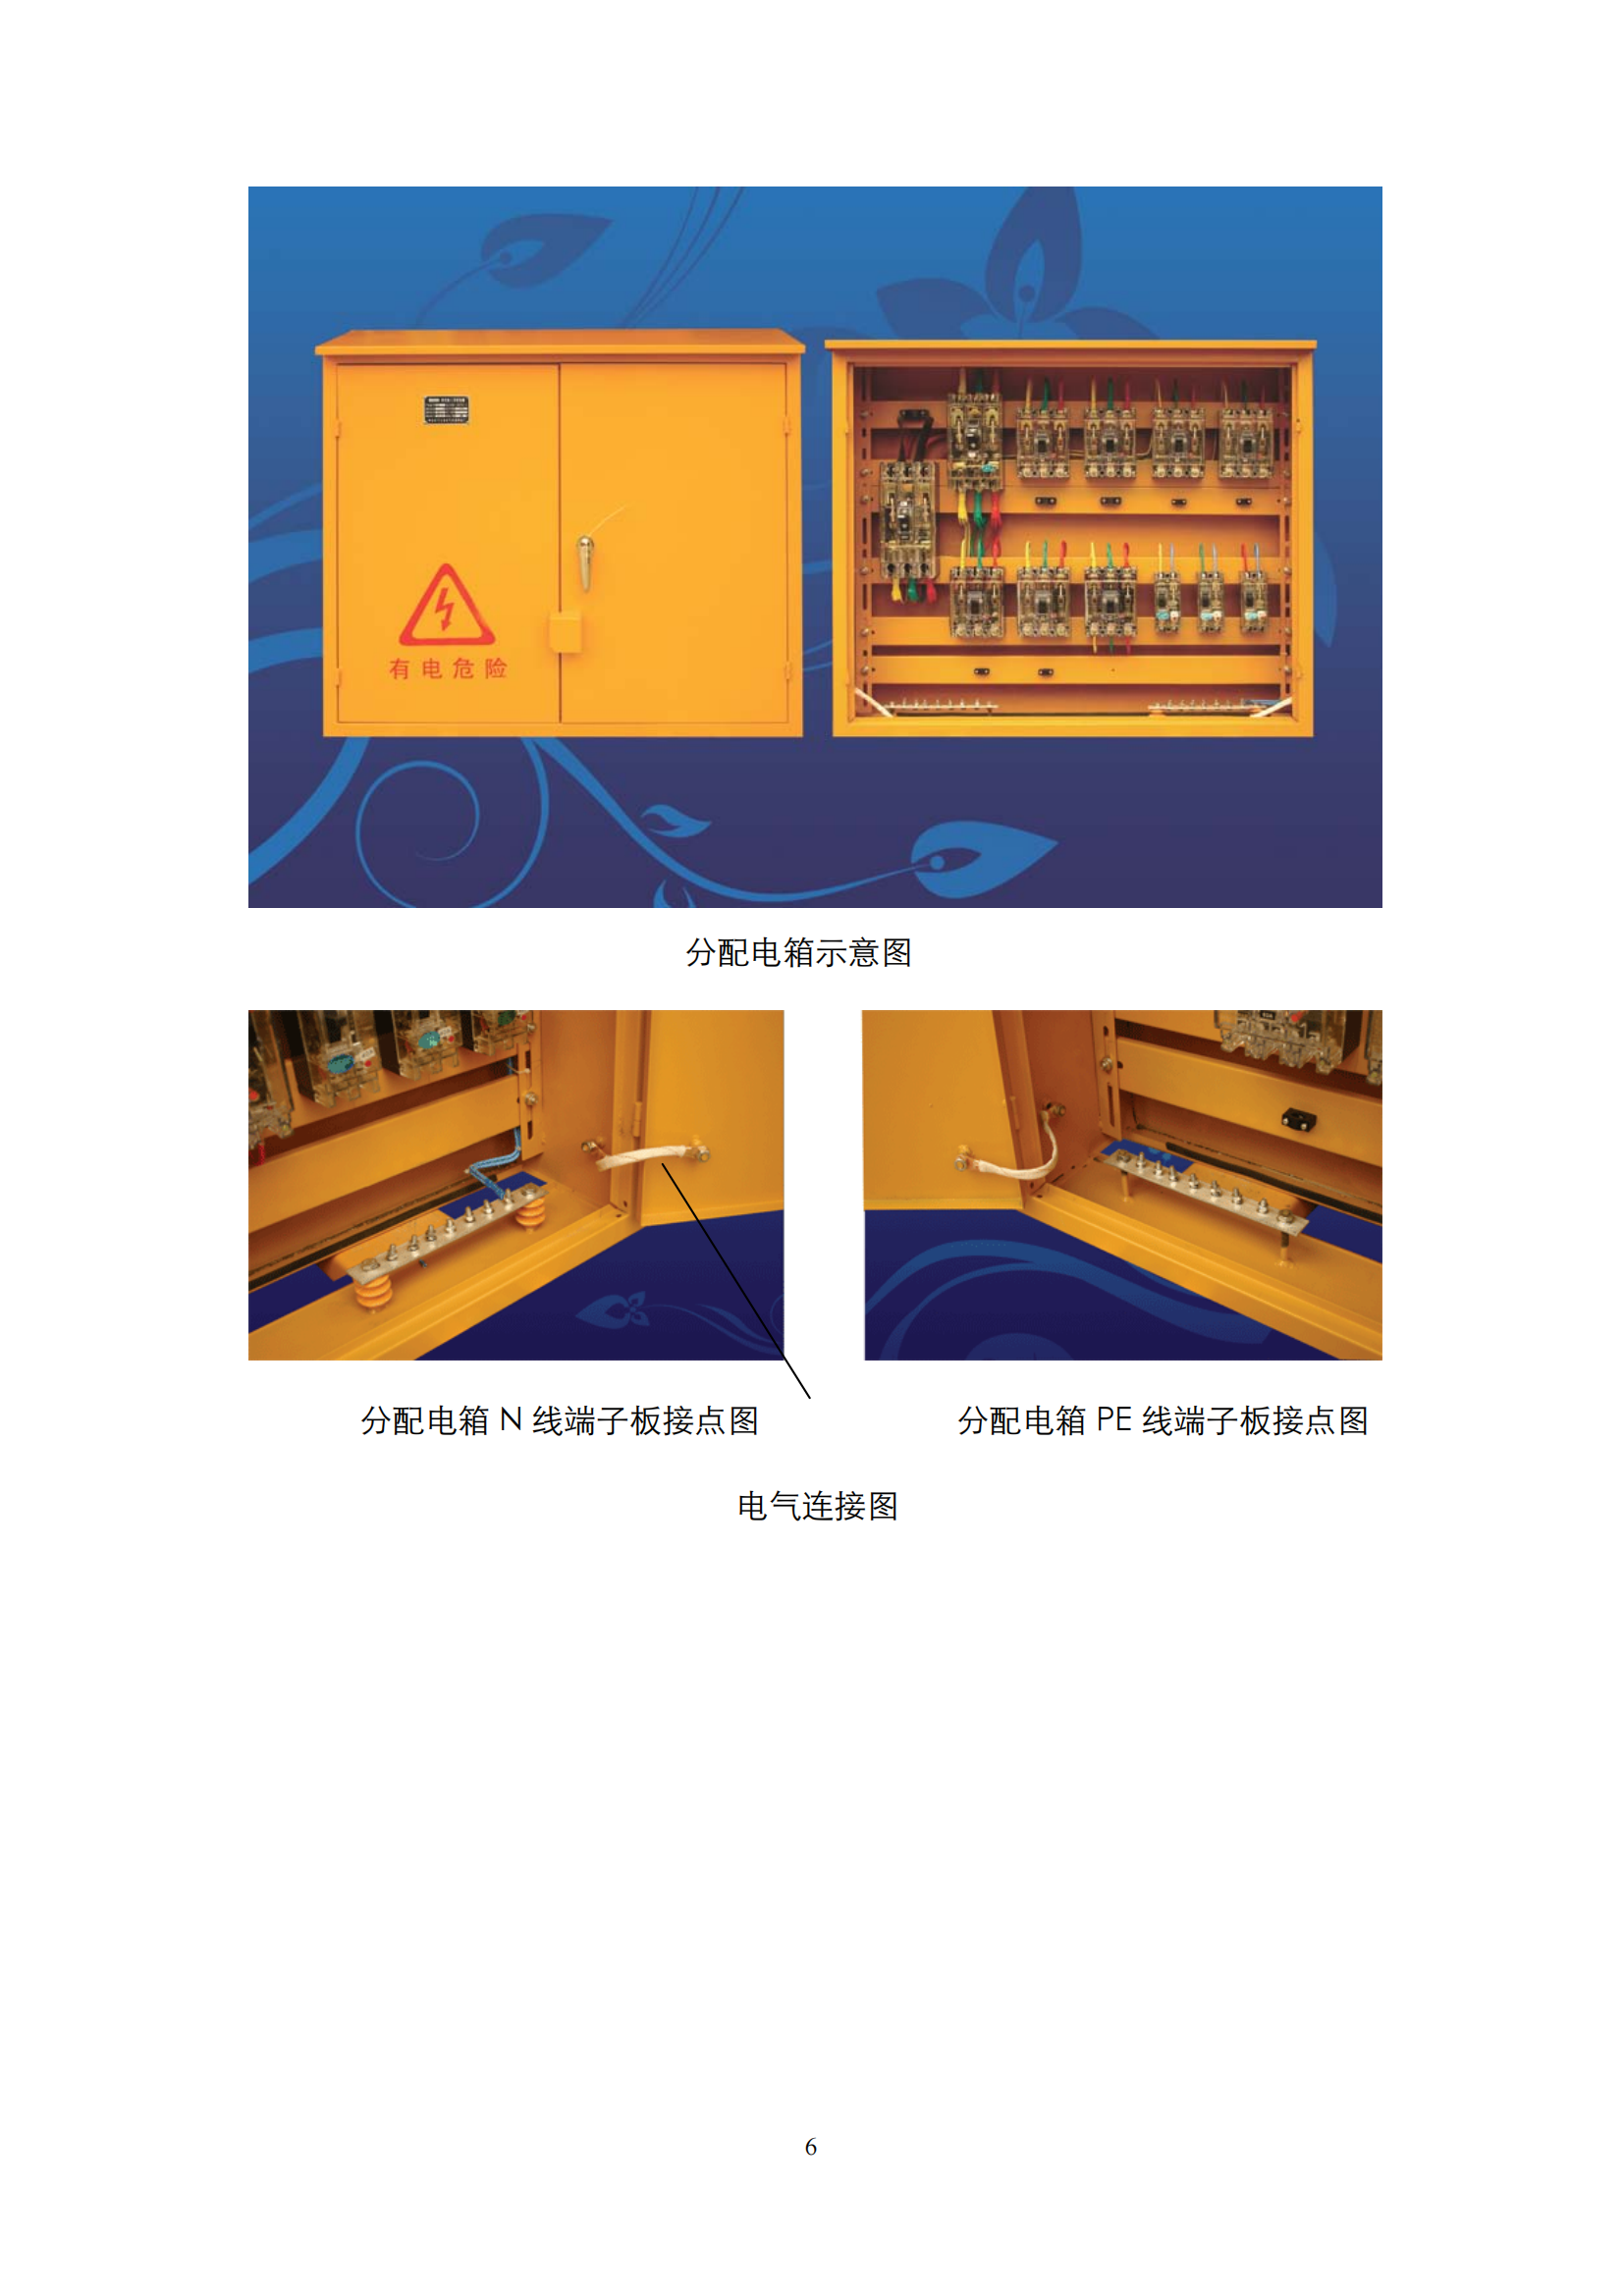 施工现场临时用电配电箱标准化配置图集插图(6)